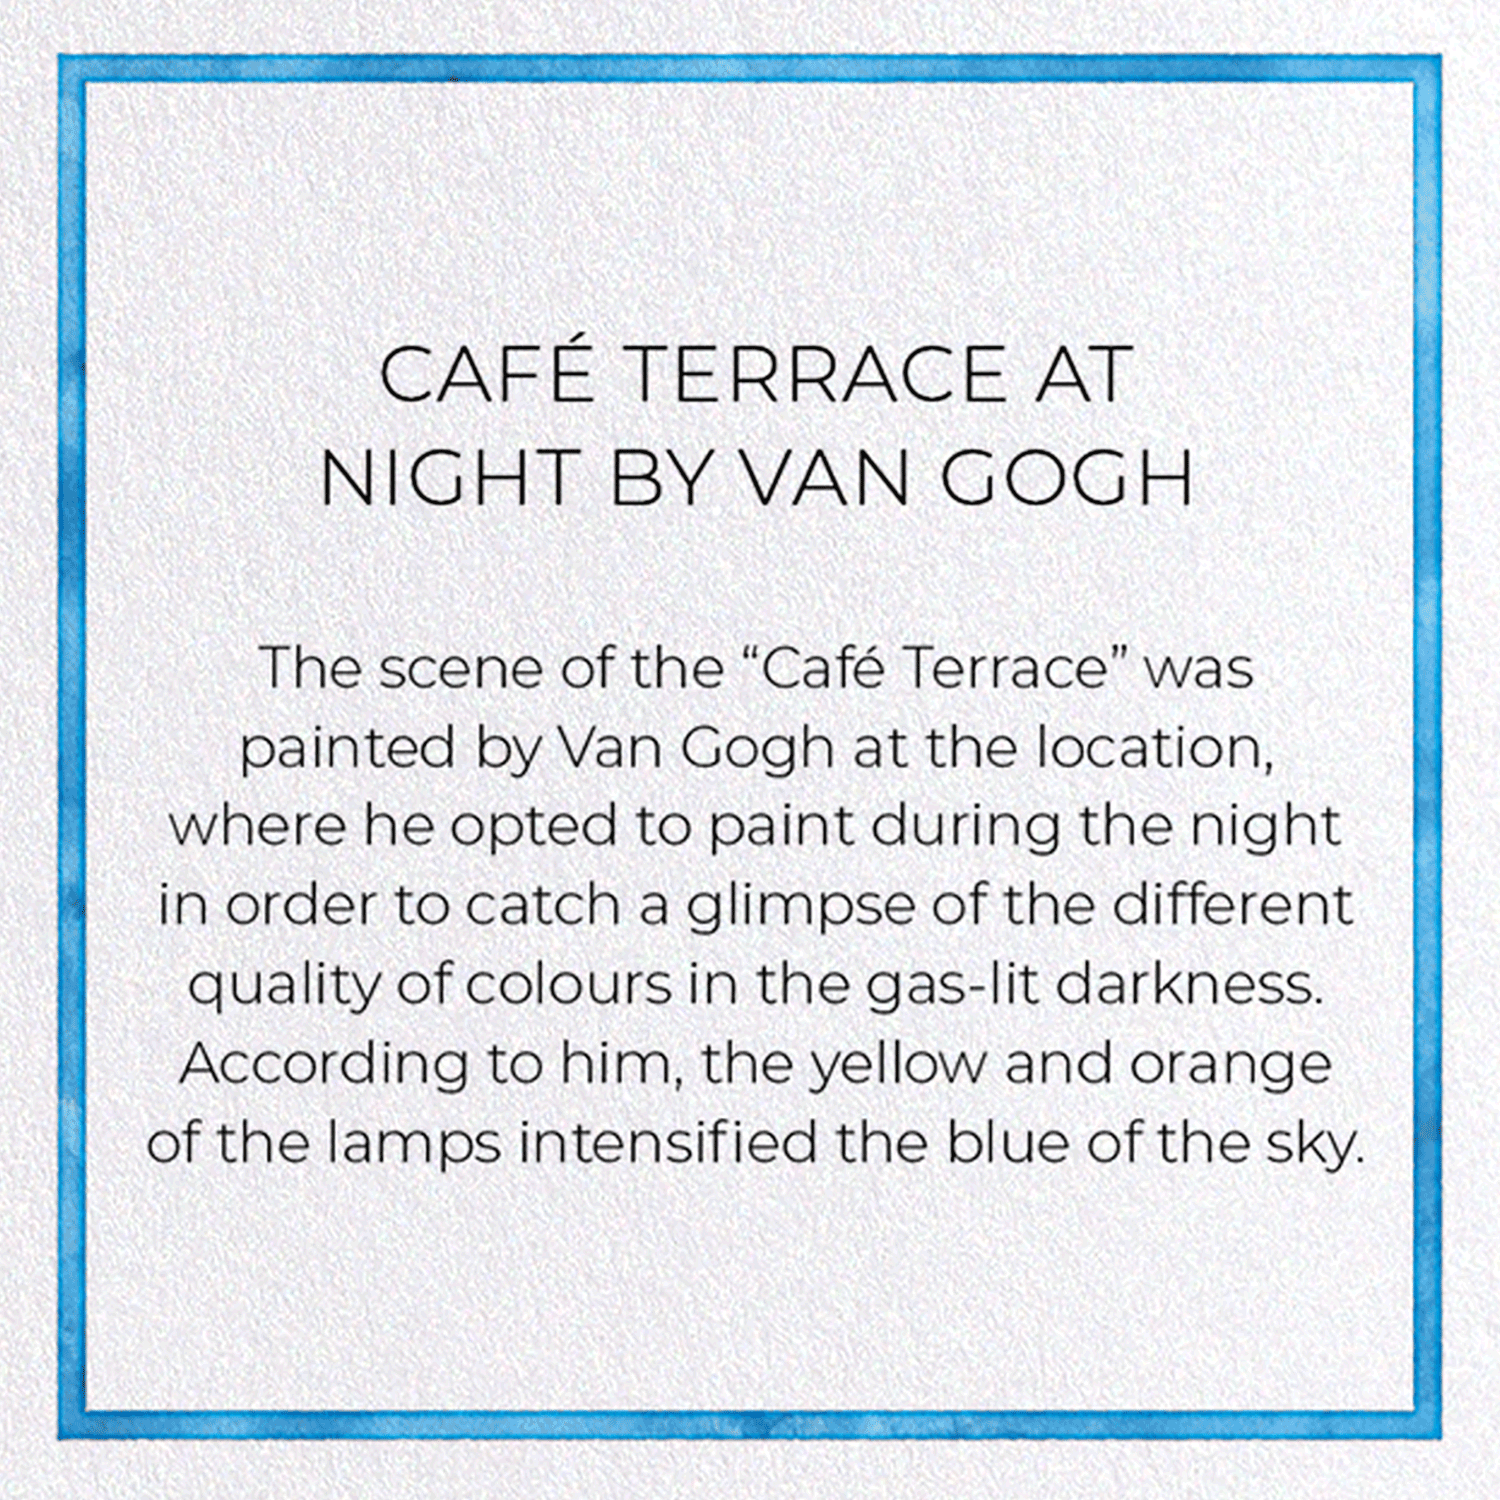 CAFÉ TERRACE AT NIGHT BY VAN GOGH